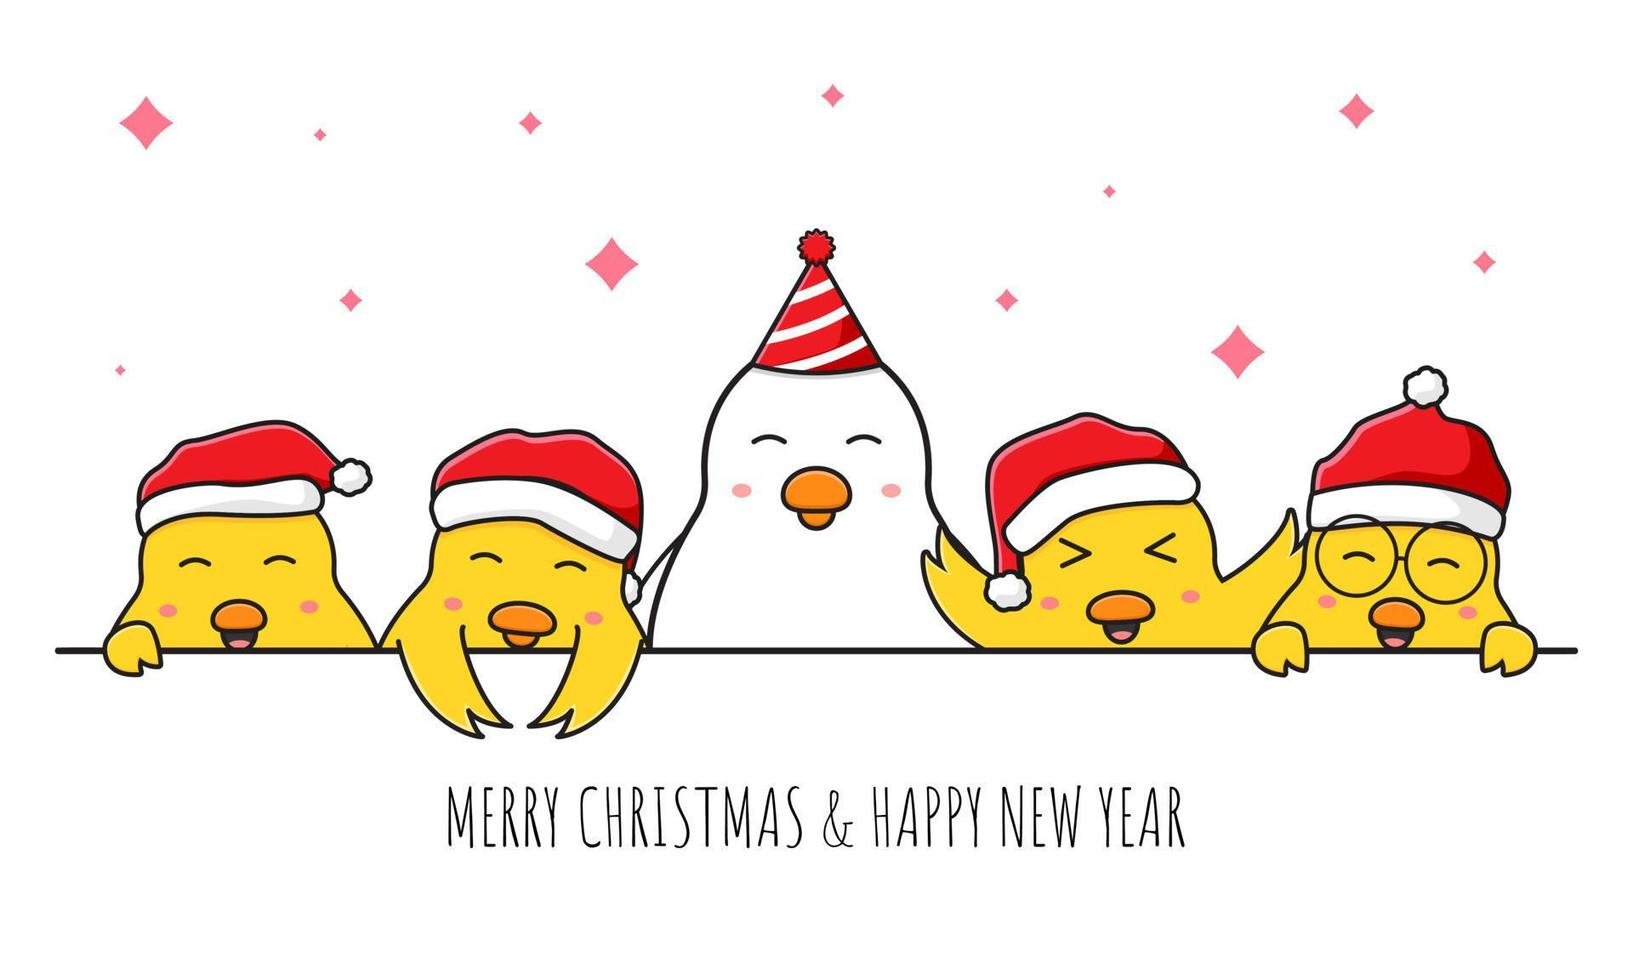 süße Hühnerfamilie, die frohe Weihnachten und ein glückliches neues Jahr Cartoon-Doodle-Kartenhintergrundillustration grüßt vektor